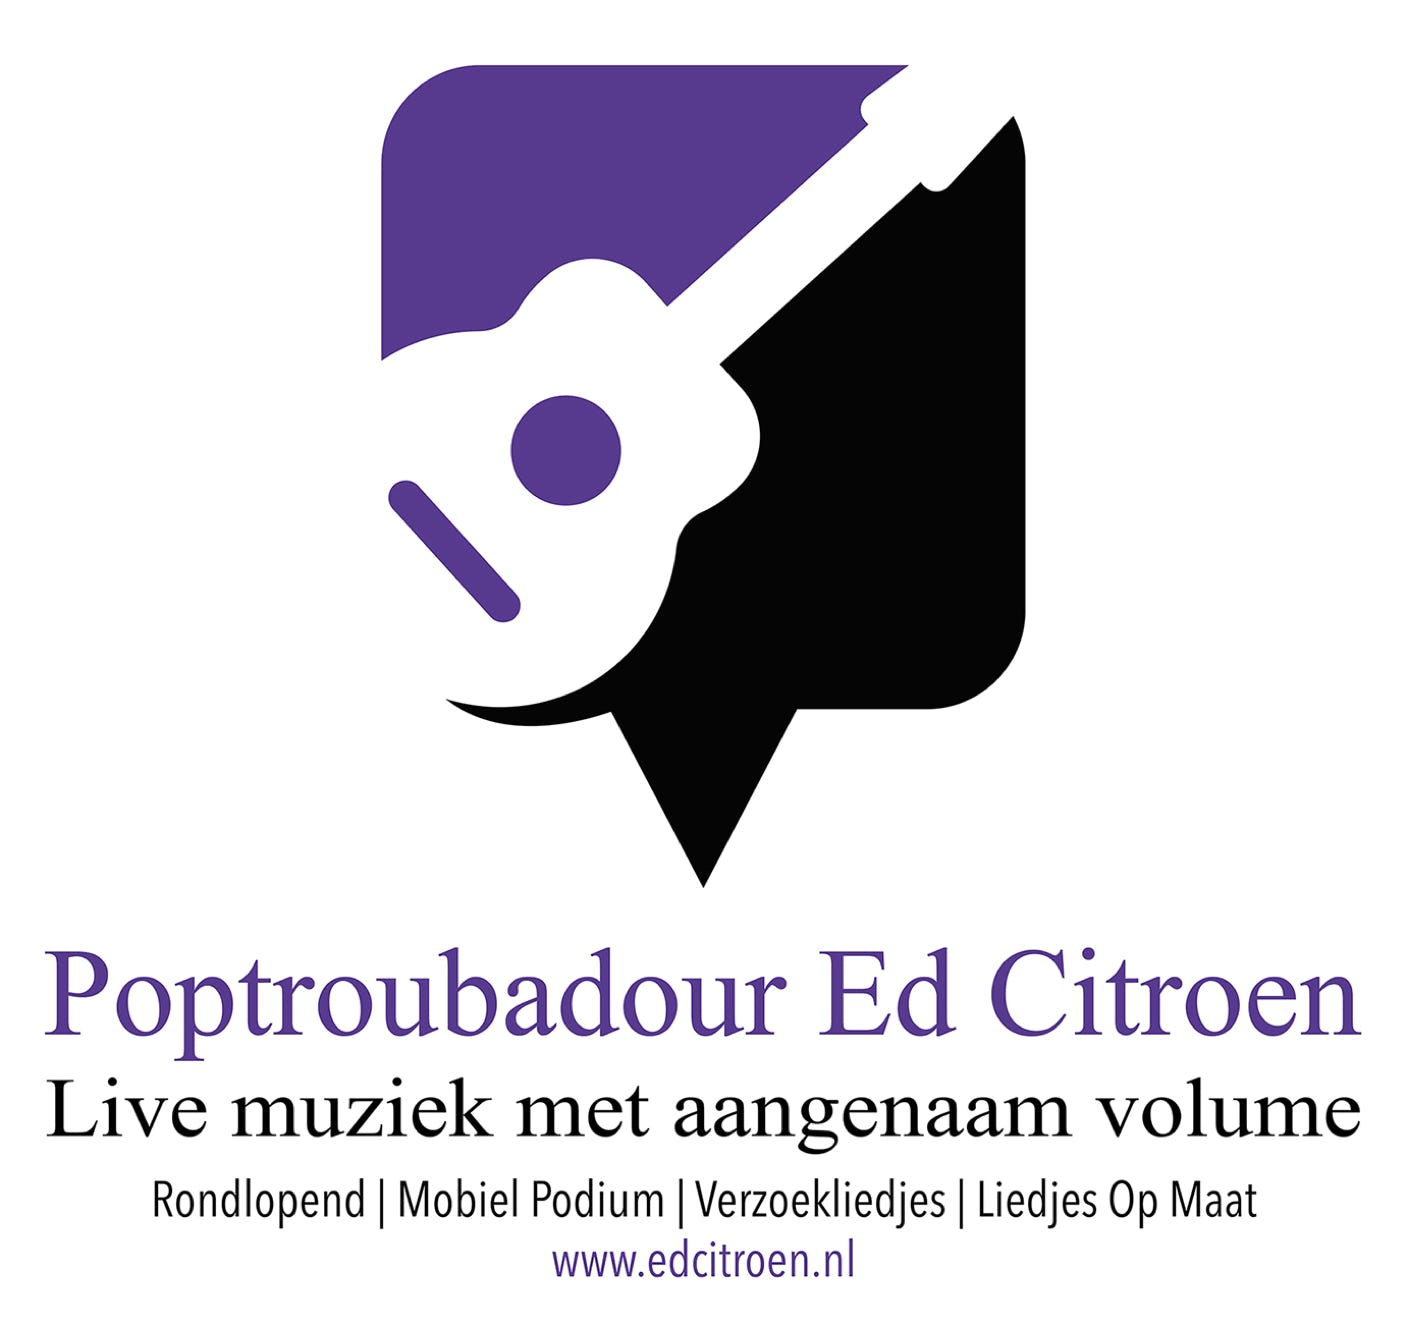 Poptroubadour Ed Citroen voor familiefeesten. Allround repertoire, lied op maat.